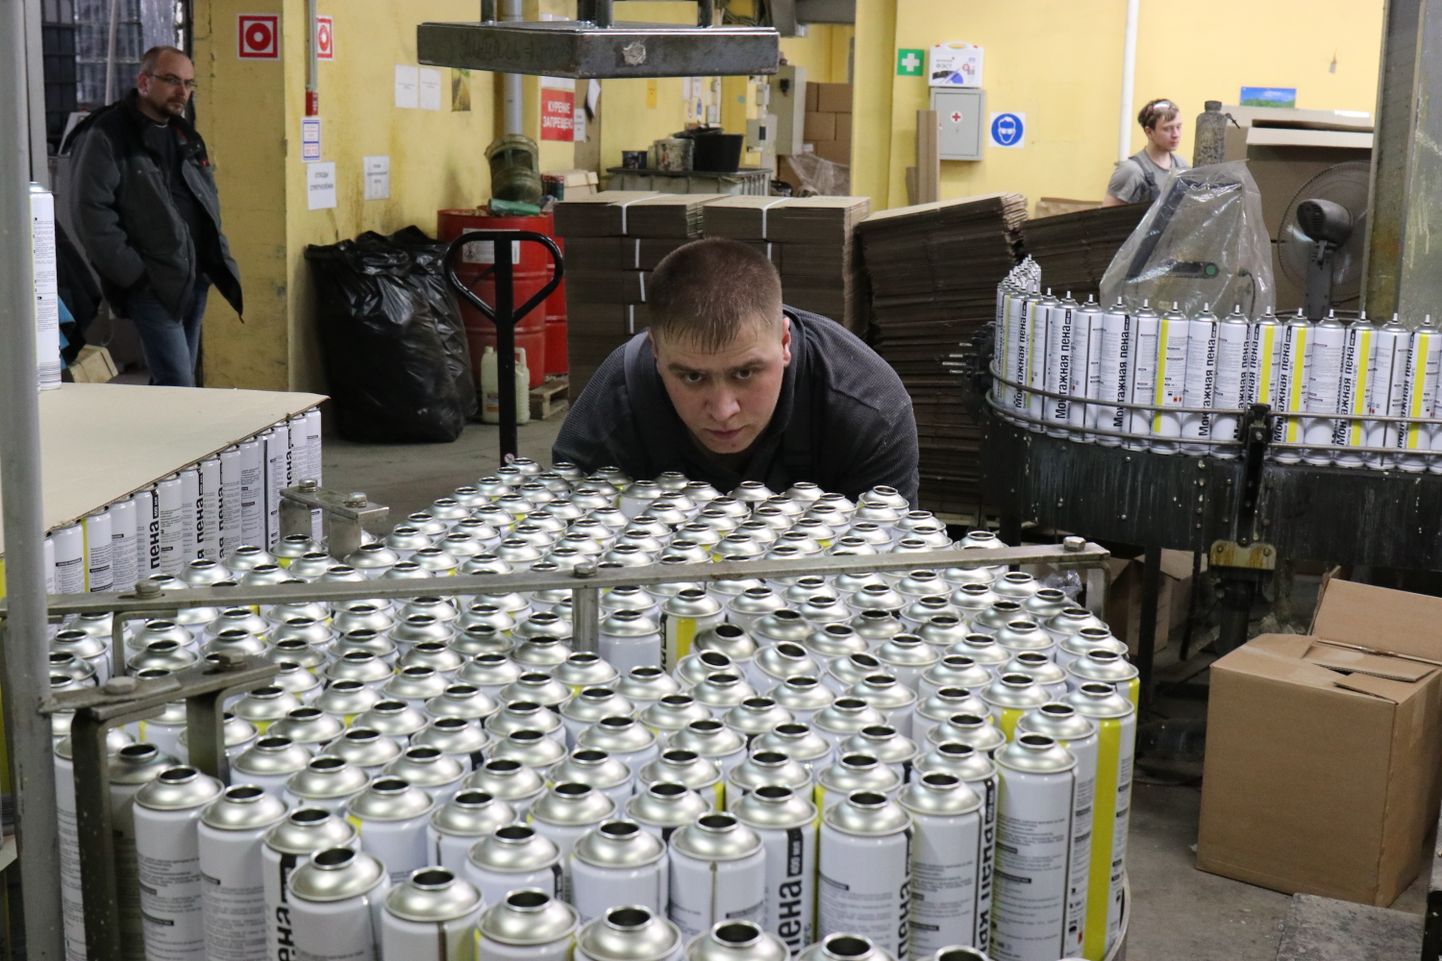 12lk1
Liinitööline valmistab Wolf Grupi tehases Moskva oblastis Žukovskis ette aerosoolballoone ehitusvahuga täitmiseks.